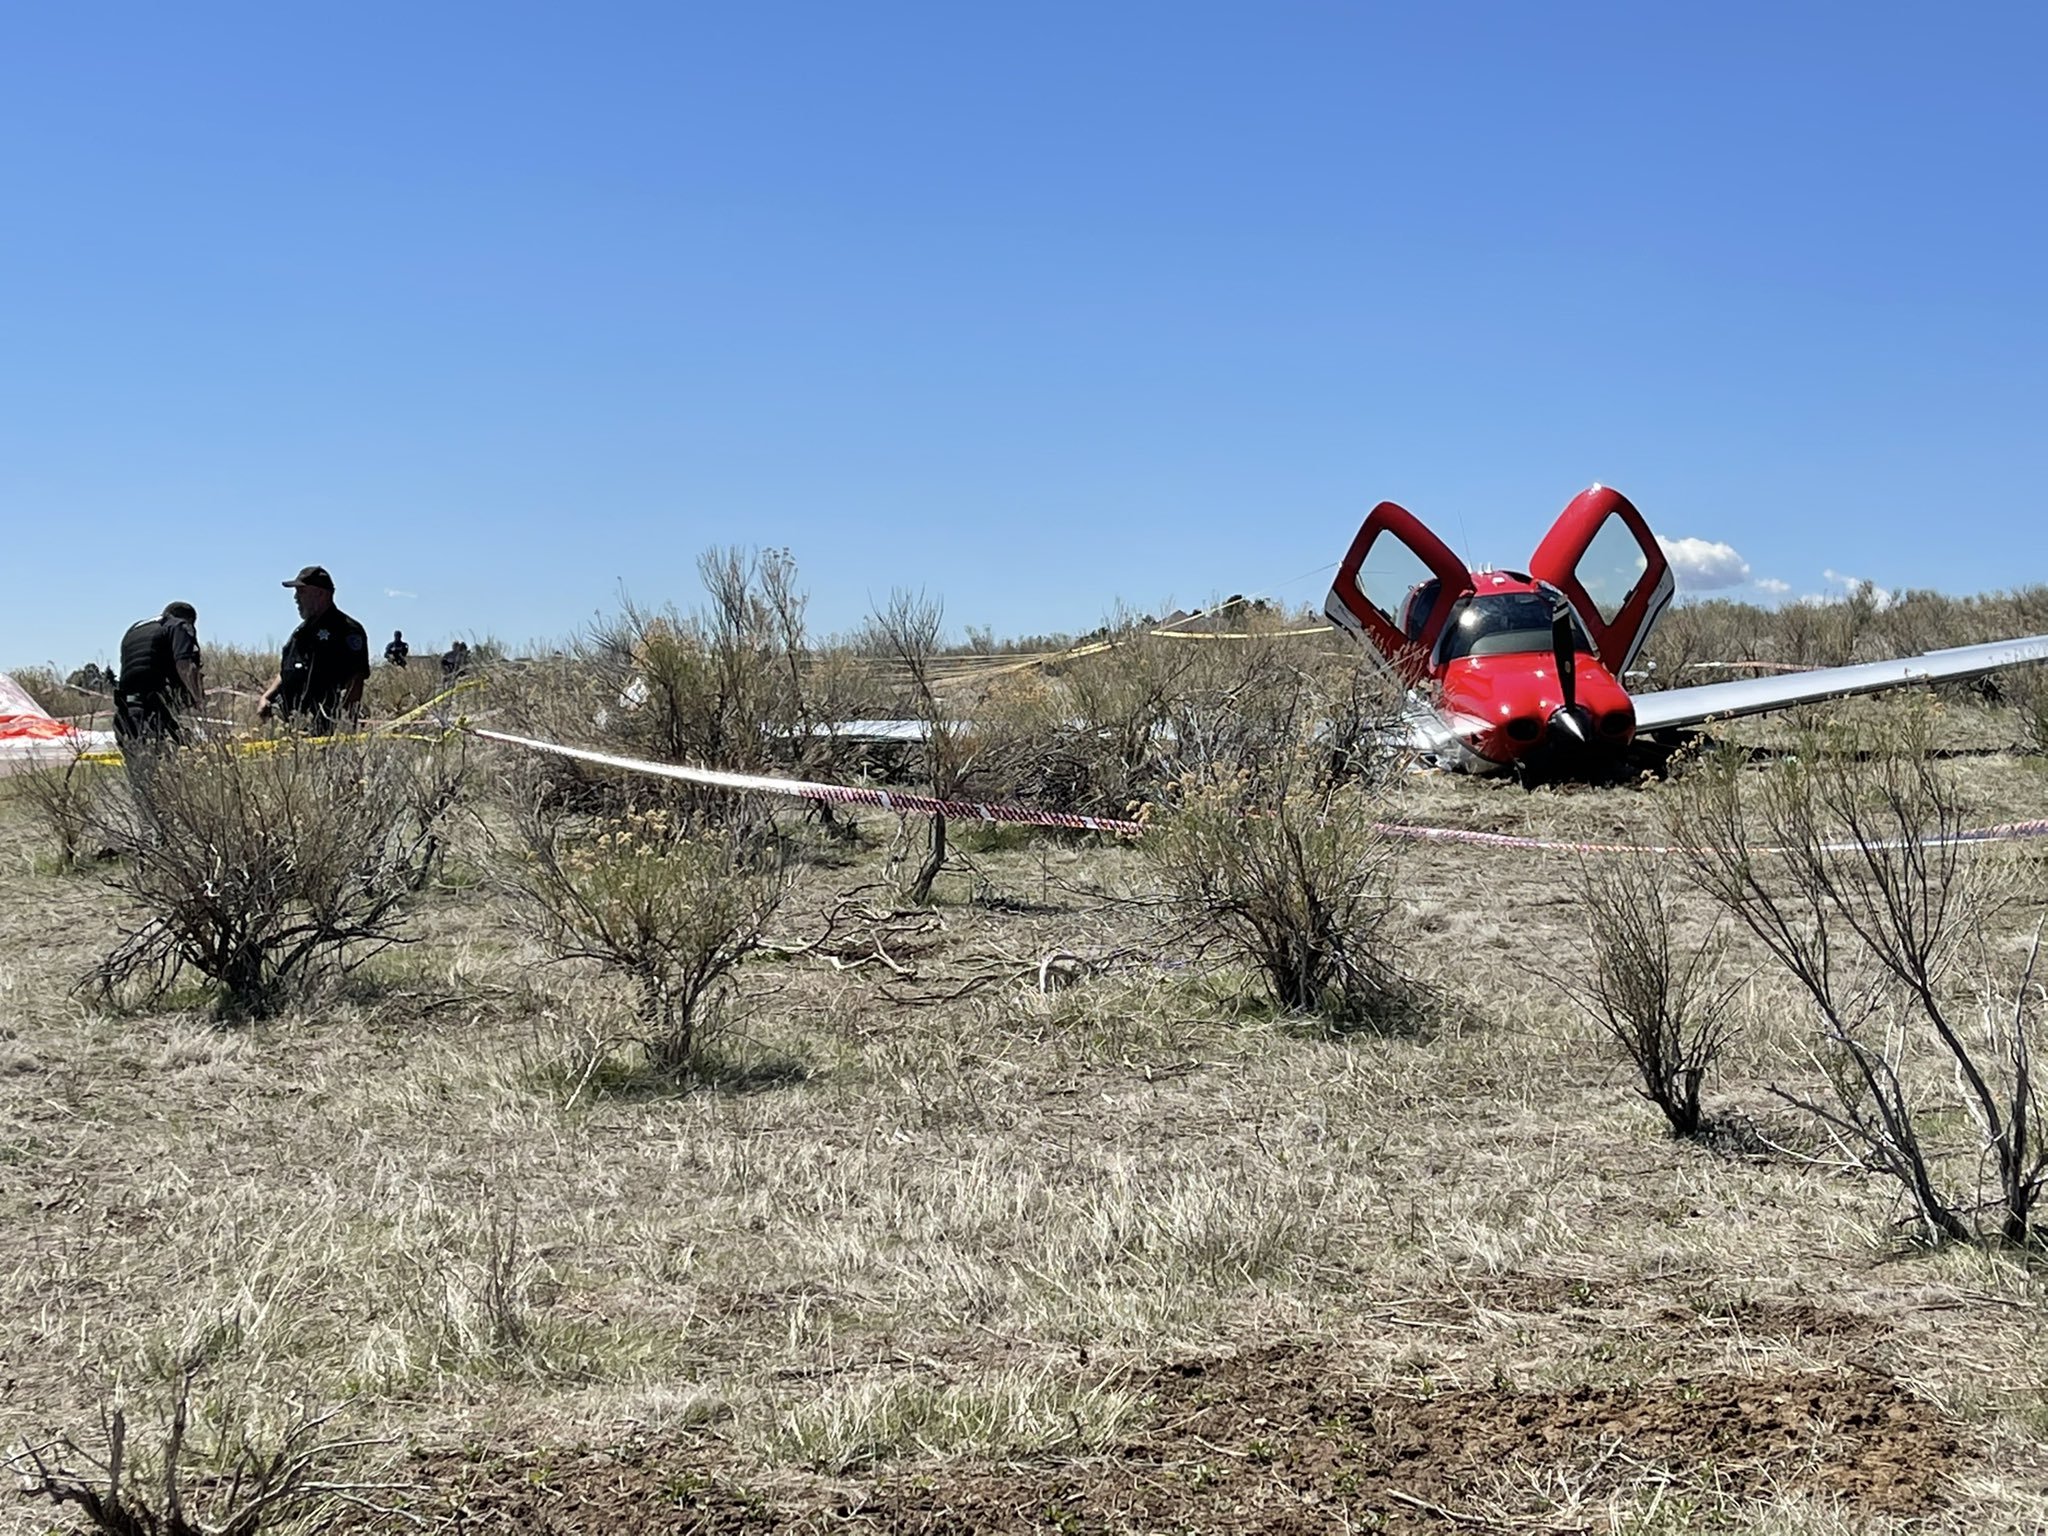 Já o avião menor acionou um paraquedas na fuselagem e conseguiu pousar num gramado (Imagem: CBS Denver/Reprodução)